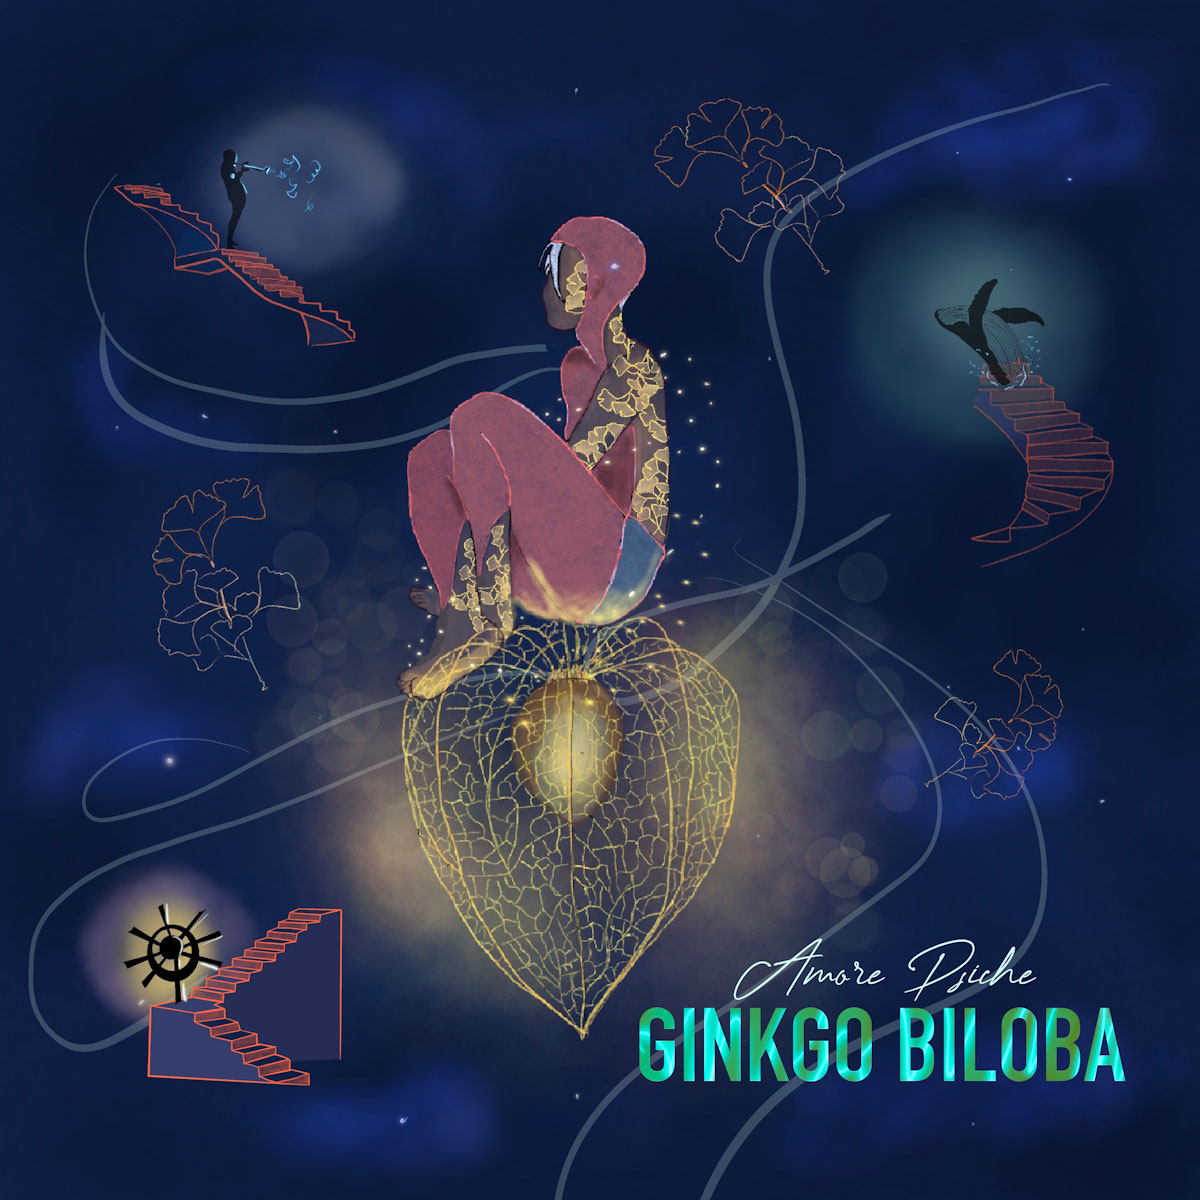 Scopri di più sull'articolo “Ginkgo Biloba” il nuovo album di Amore Psiche